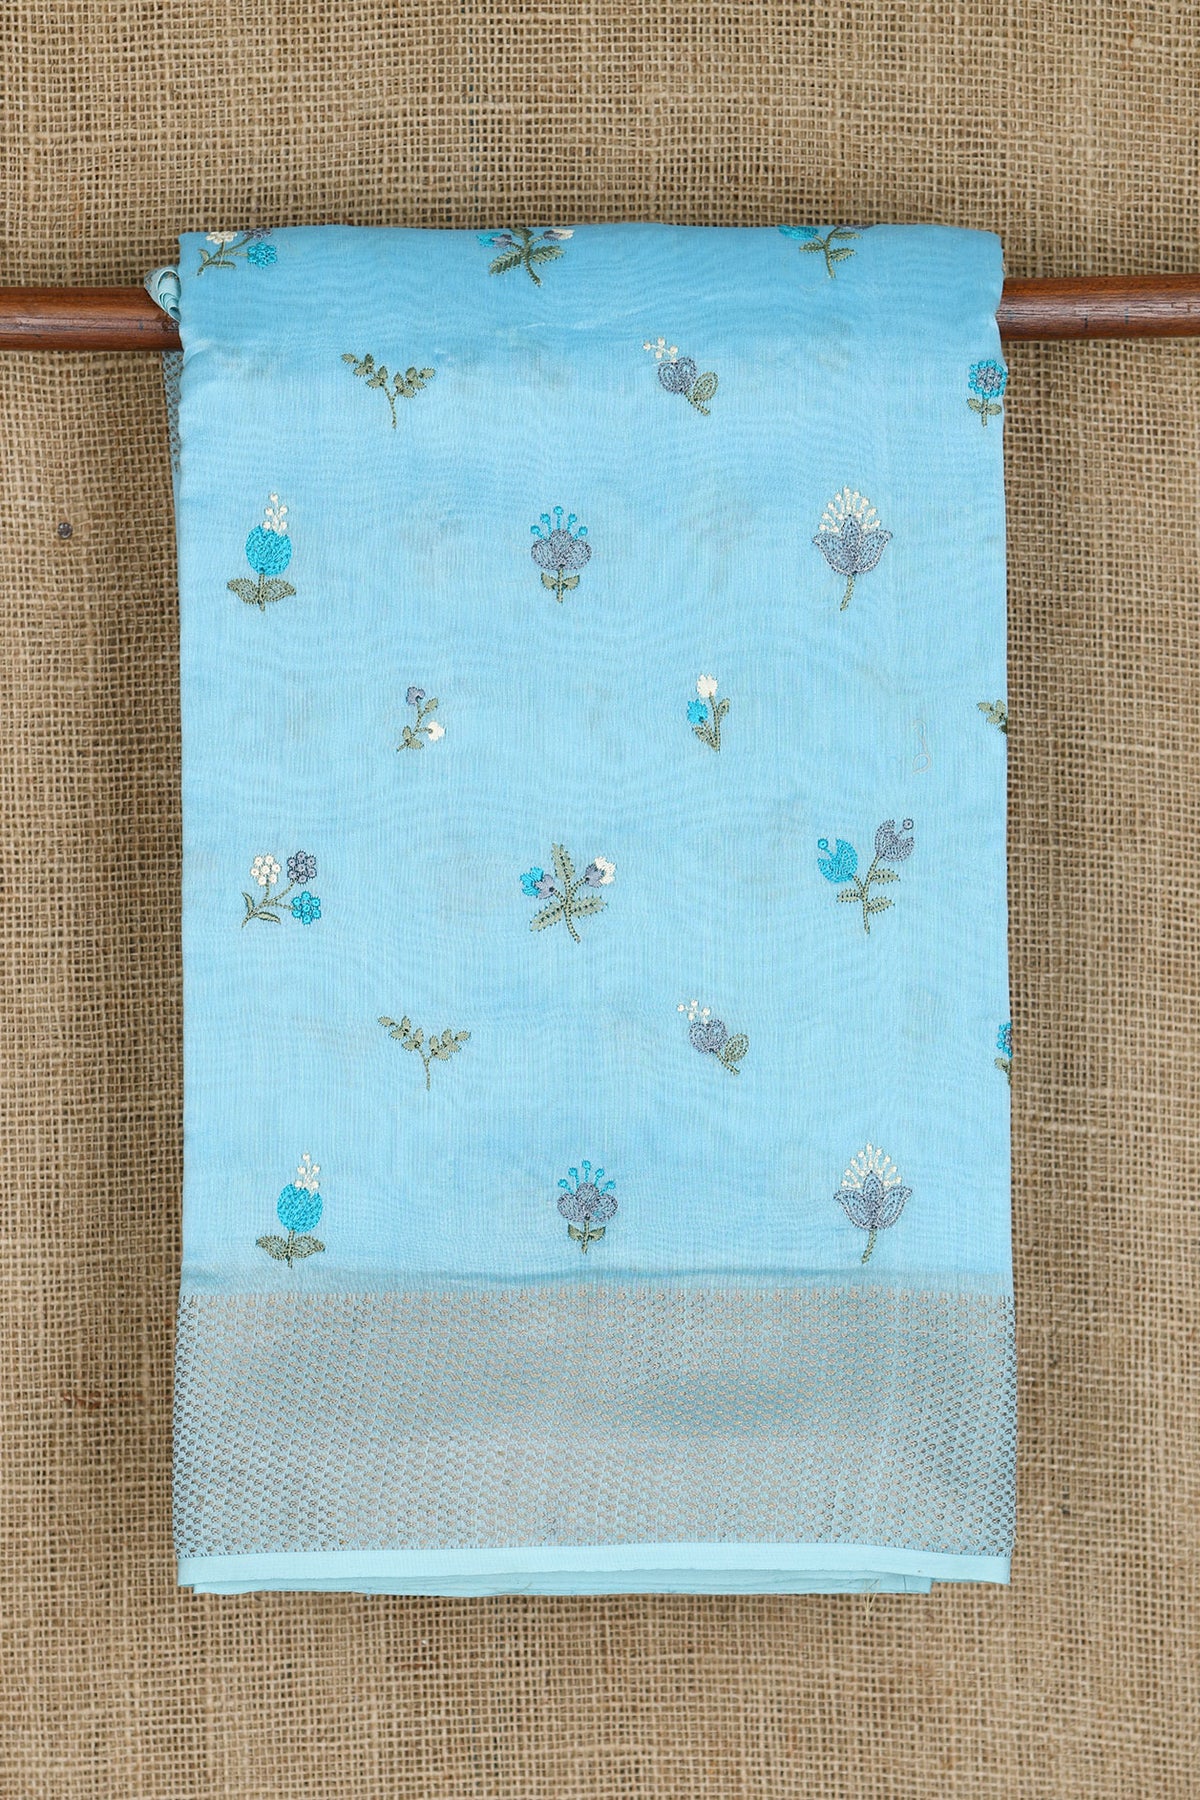 Embroidered Floral Design Pastel Blue Chanderi Silk Saree